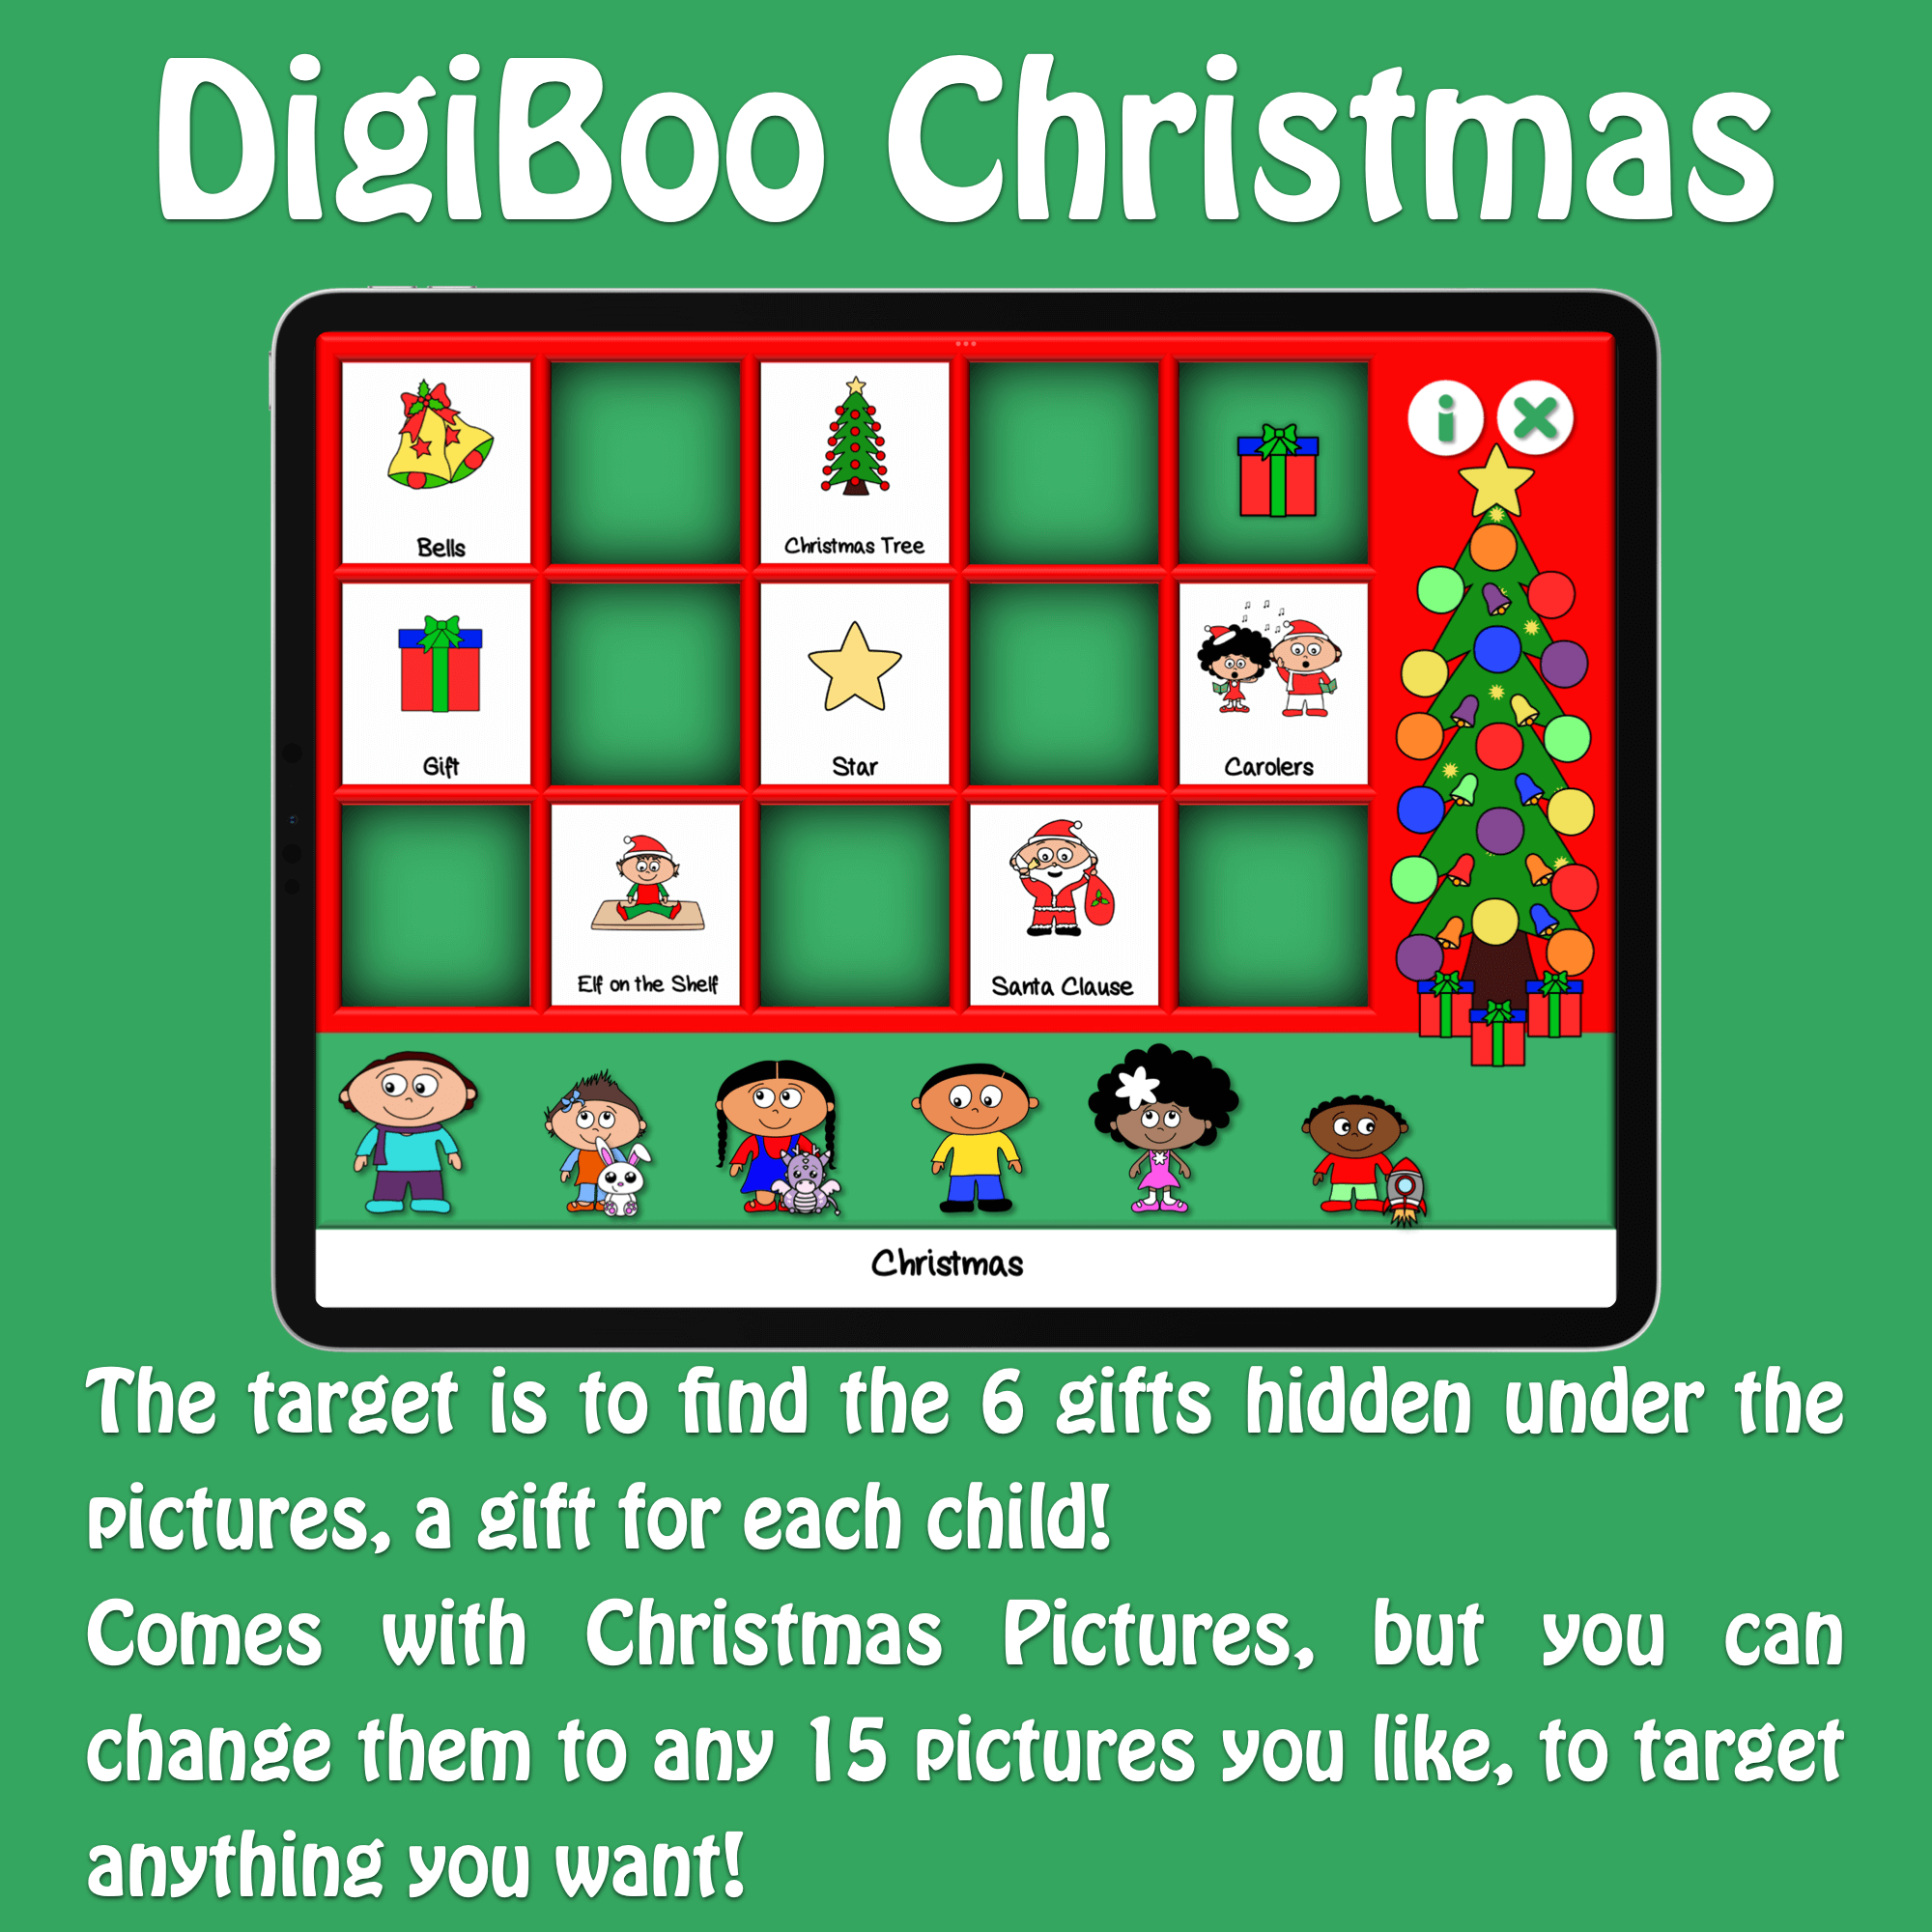 DigiBoo – Christmas Special